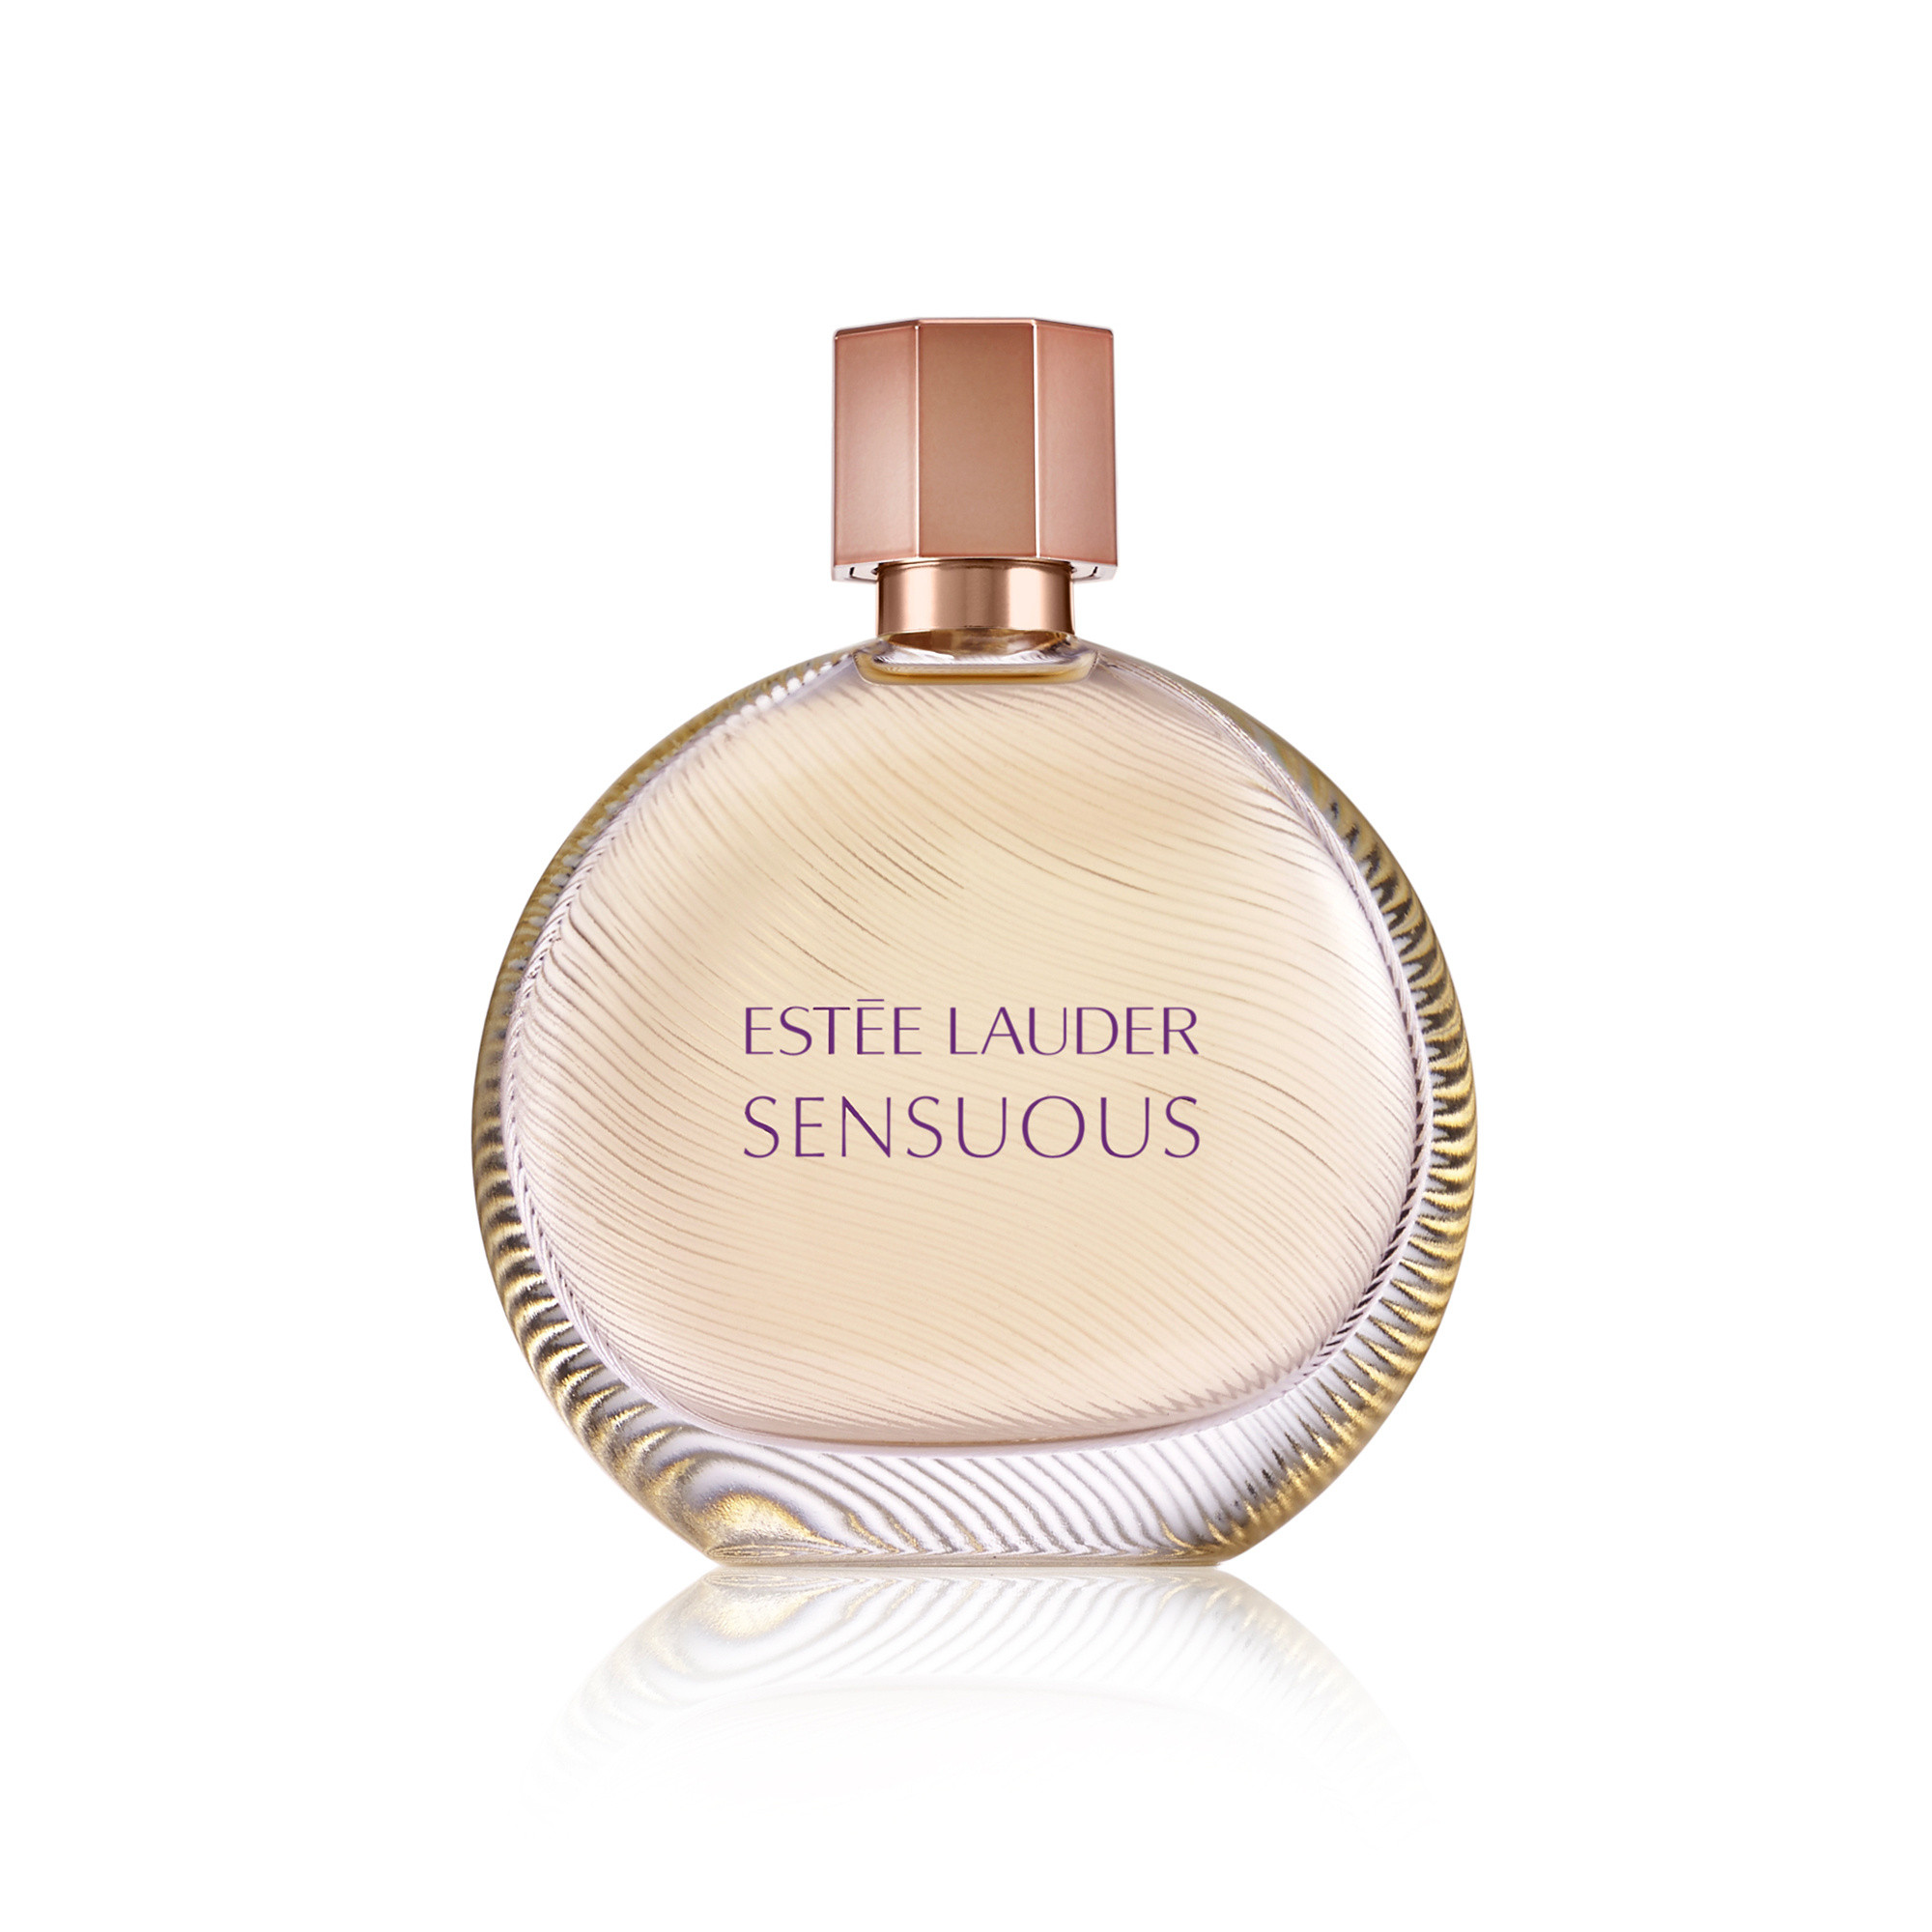 Estée Lauder sensuous eau de parfum spray 50 ml, Marrone scuro, large image number 0